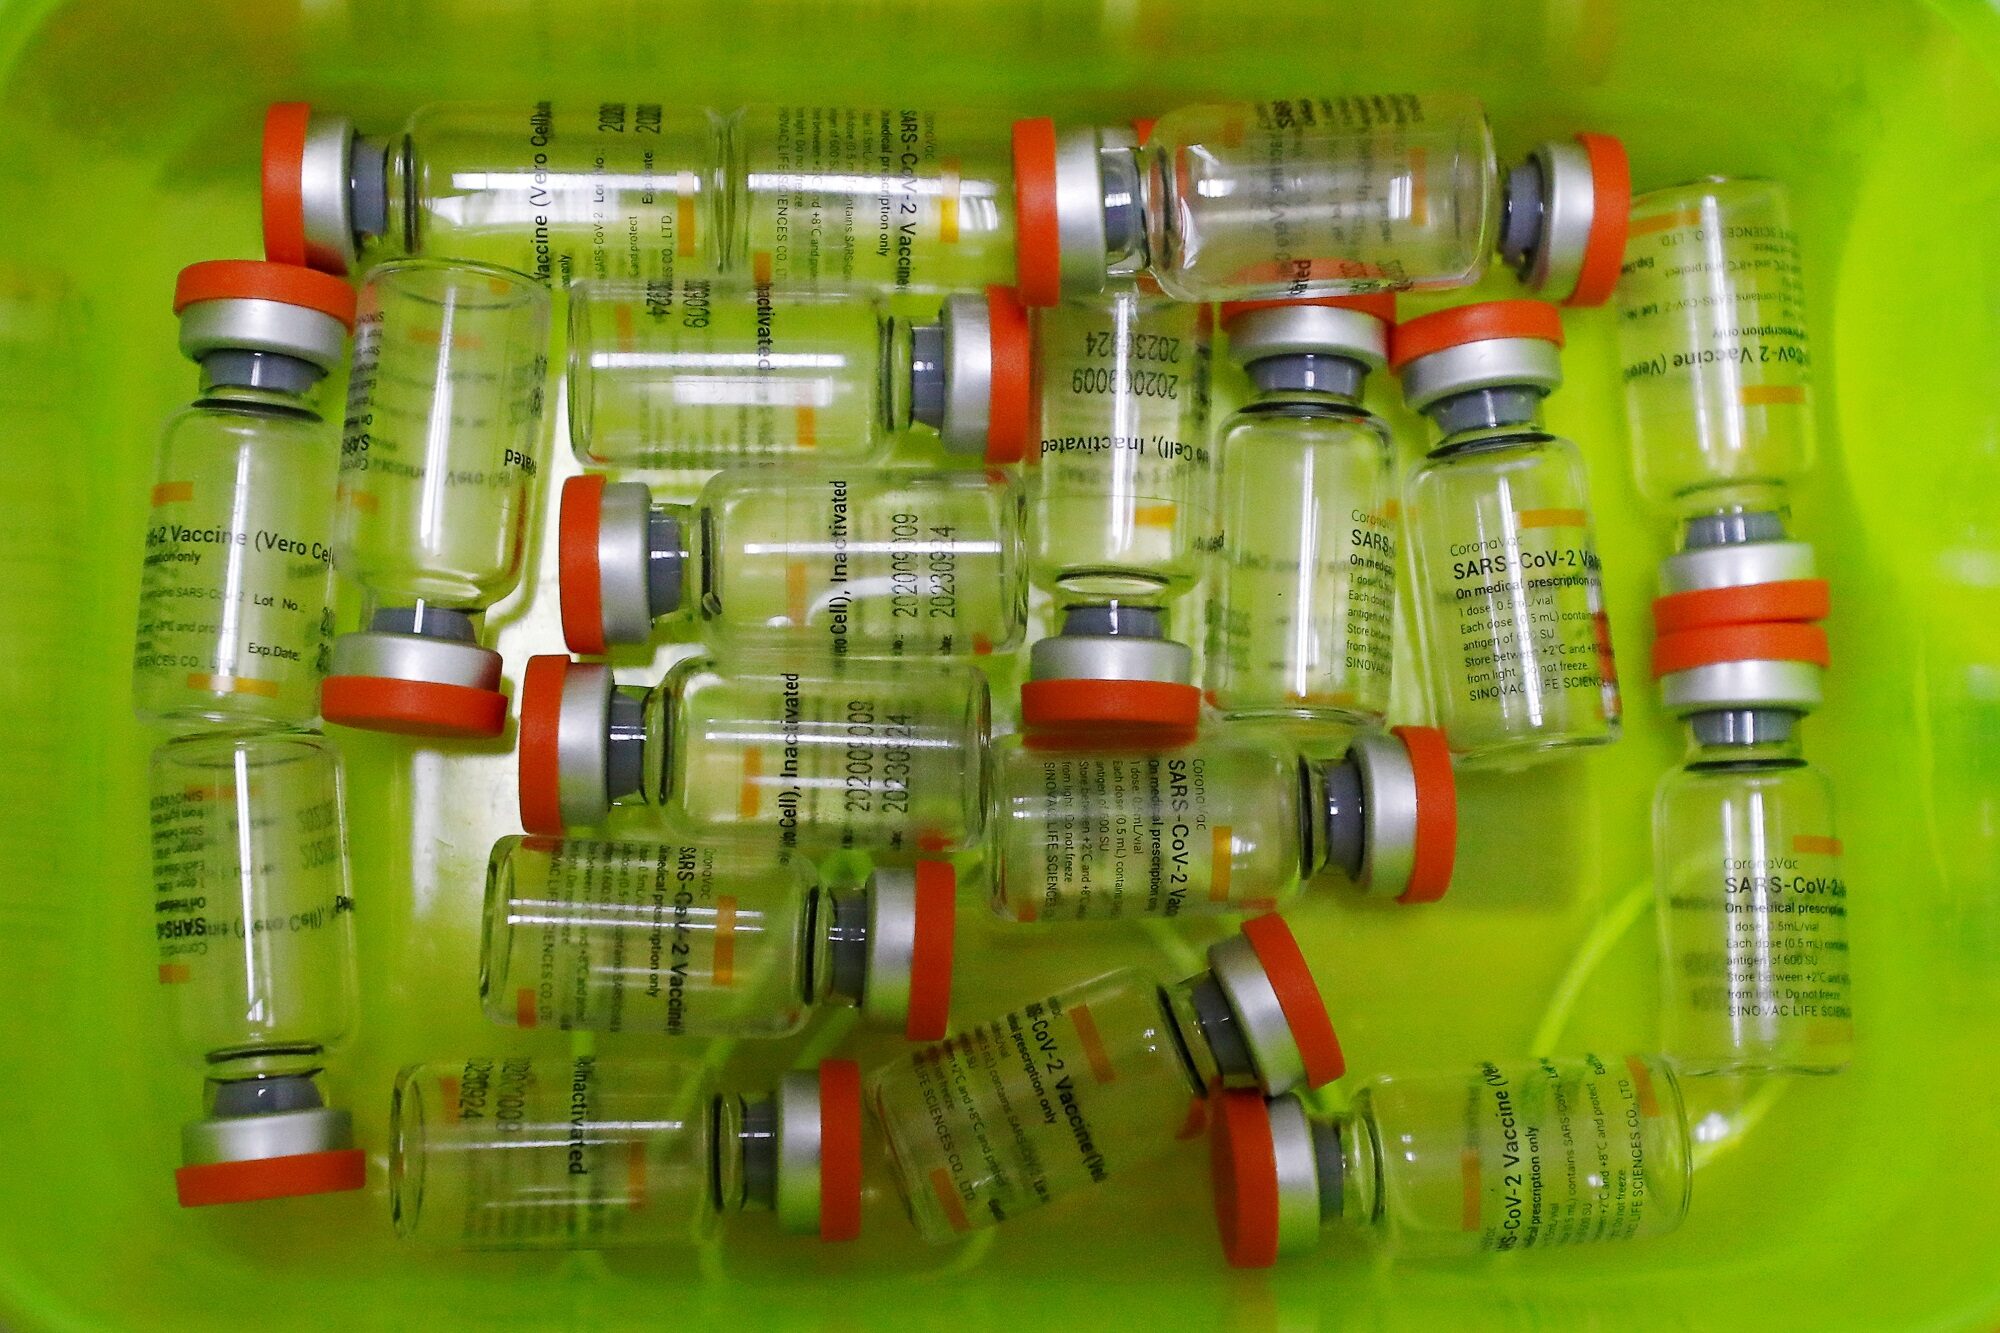 โดนหลอก! ชาวยูกันดาเกือบพันได้วัคซีนปลอม บางคนฉีดน้ำเปล่า